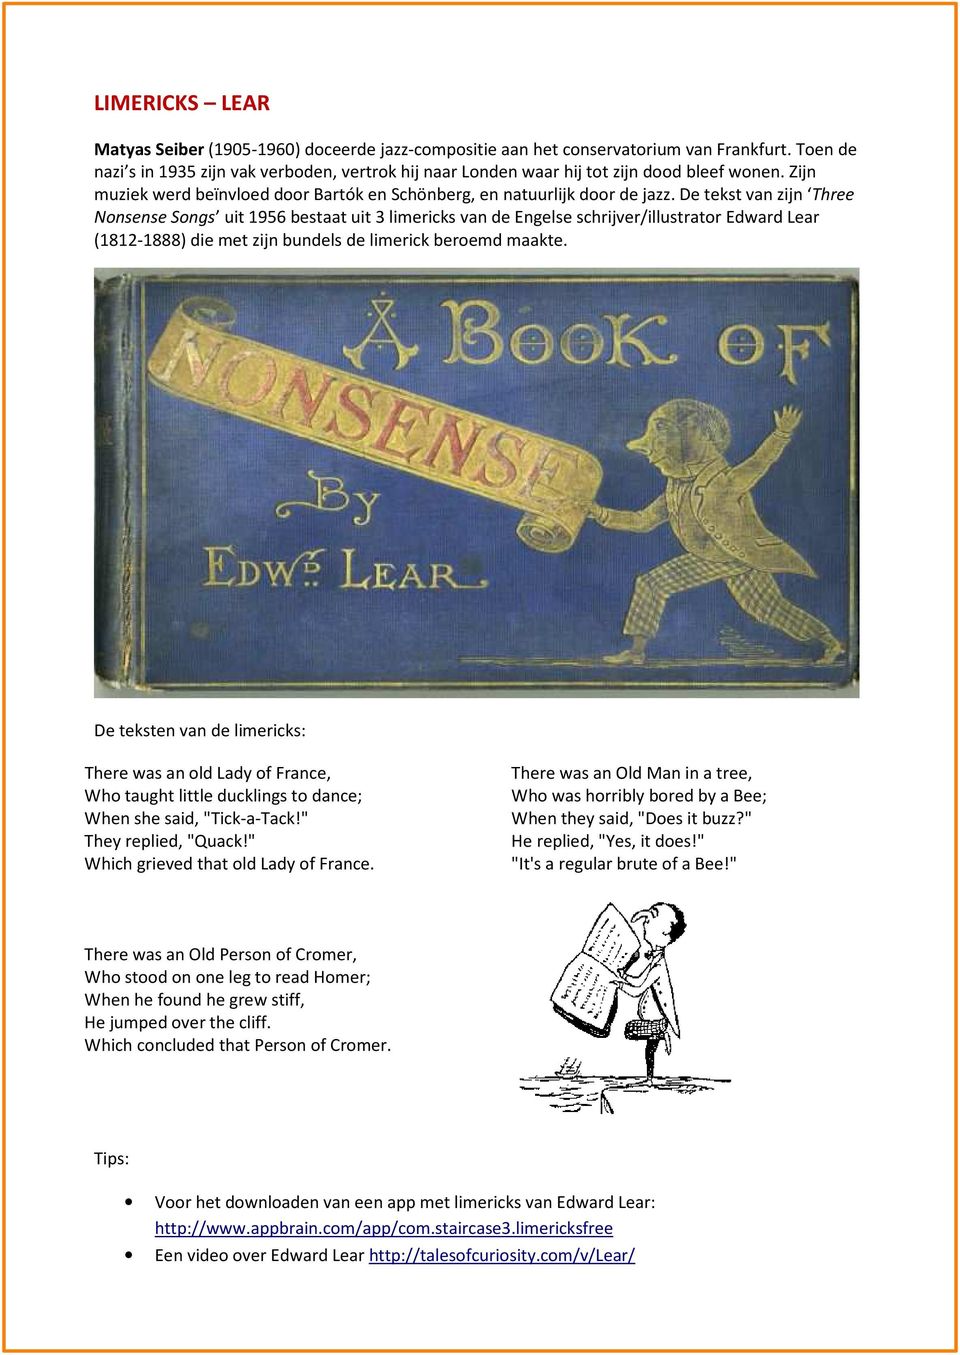 De tekst van zijn Three Nonsense Songs uit 1956 bestaat uit 3 limericks van de Engelse schrijver/illustrator Edward Lear (1812-1888) die met zijn bundels de limerick beroemd maakte.